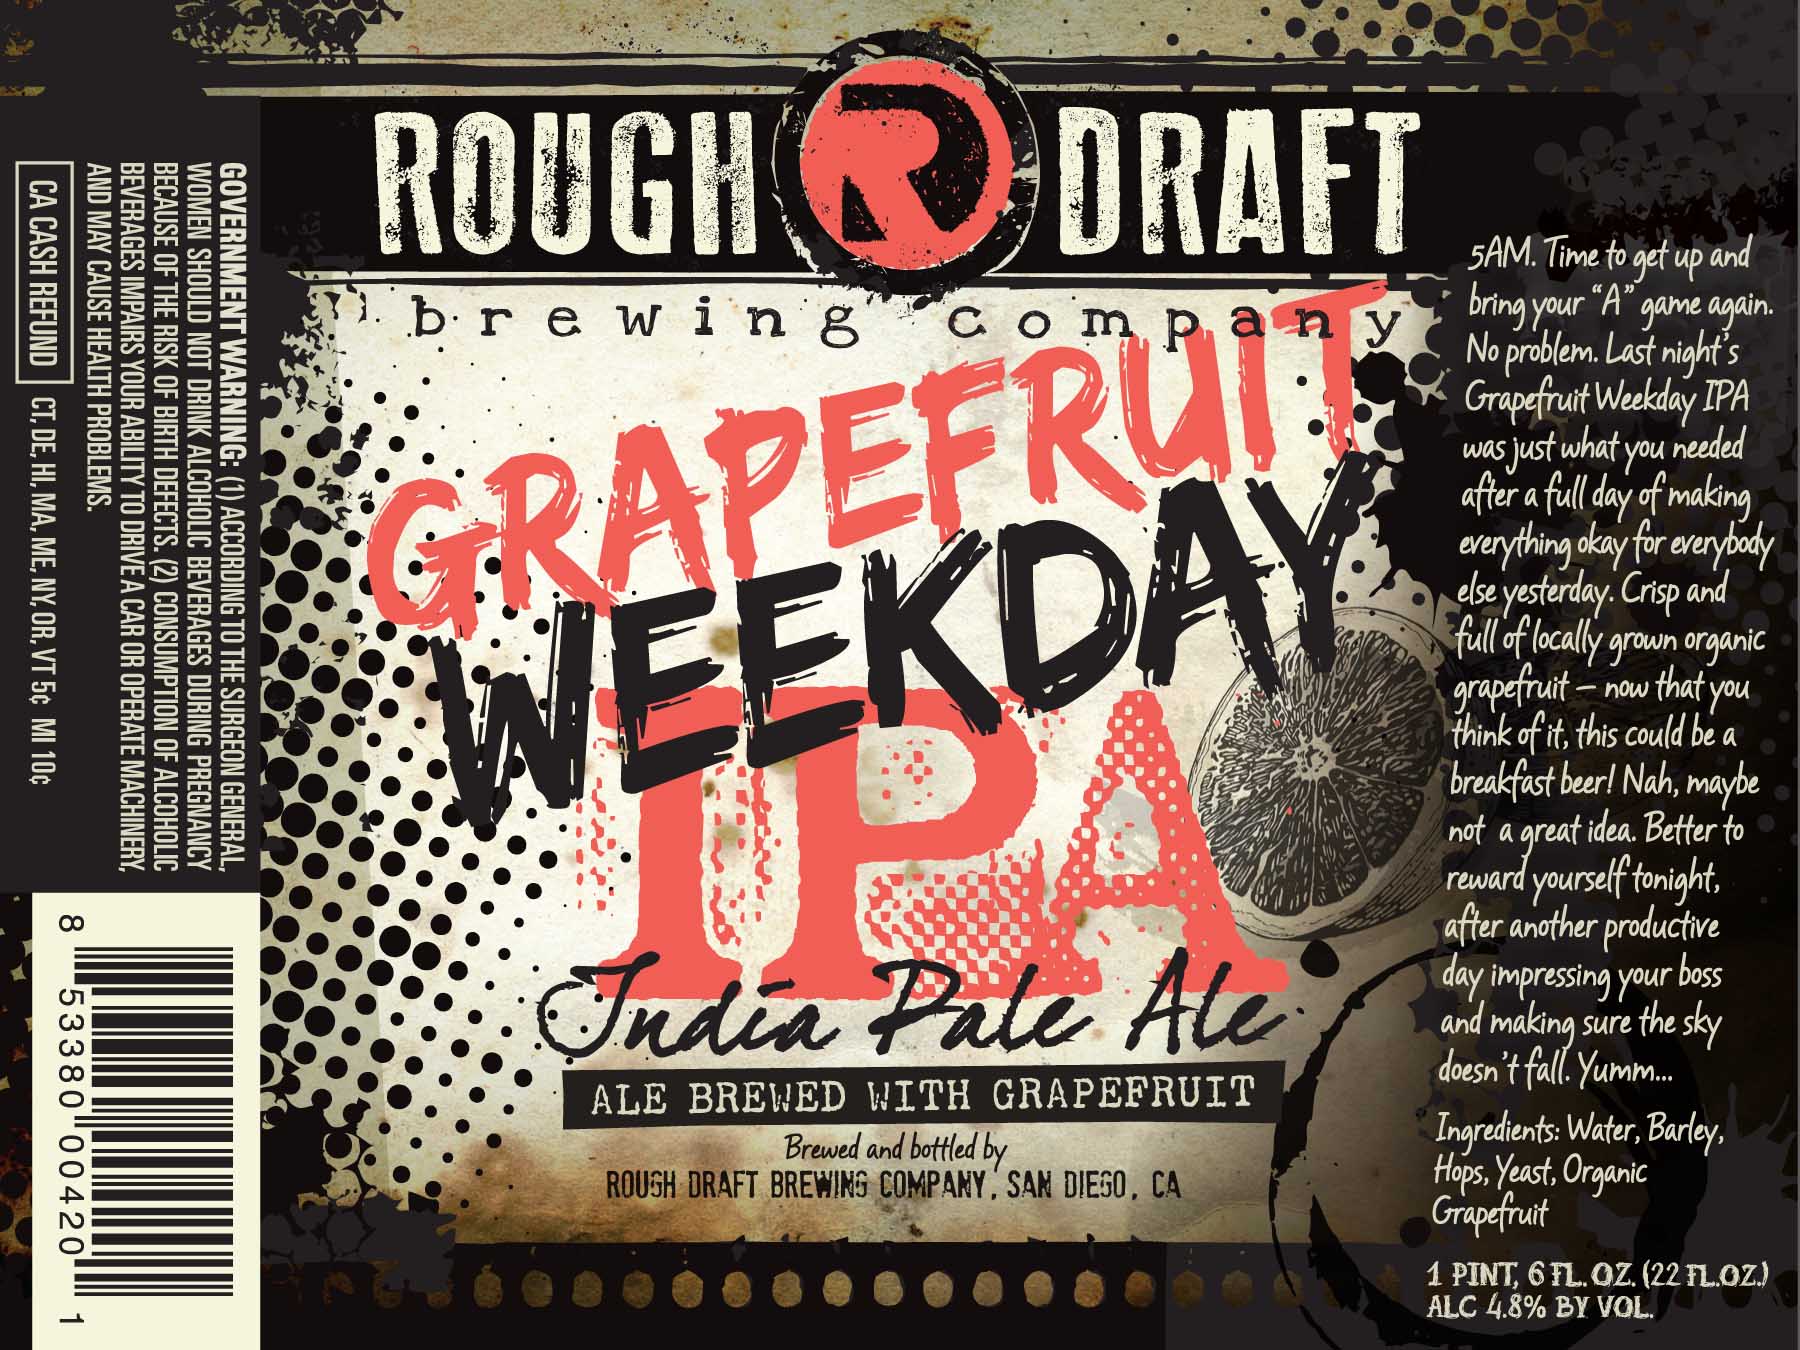 Rough Draft Grapefruit Weekday IPA